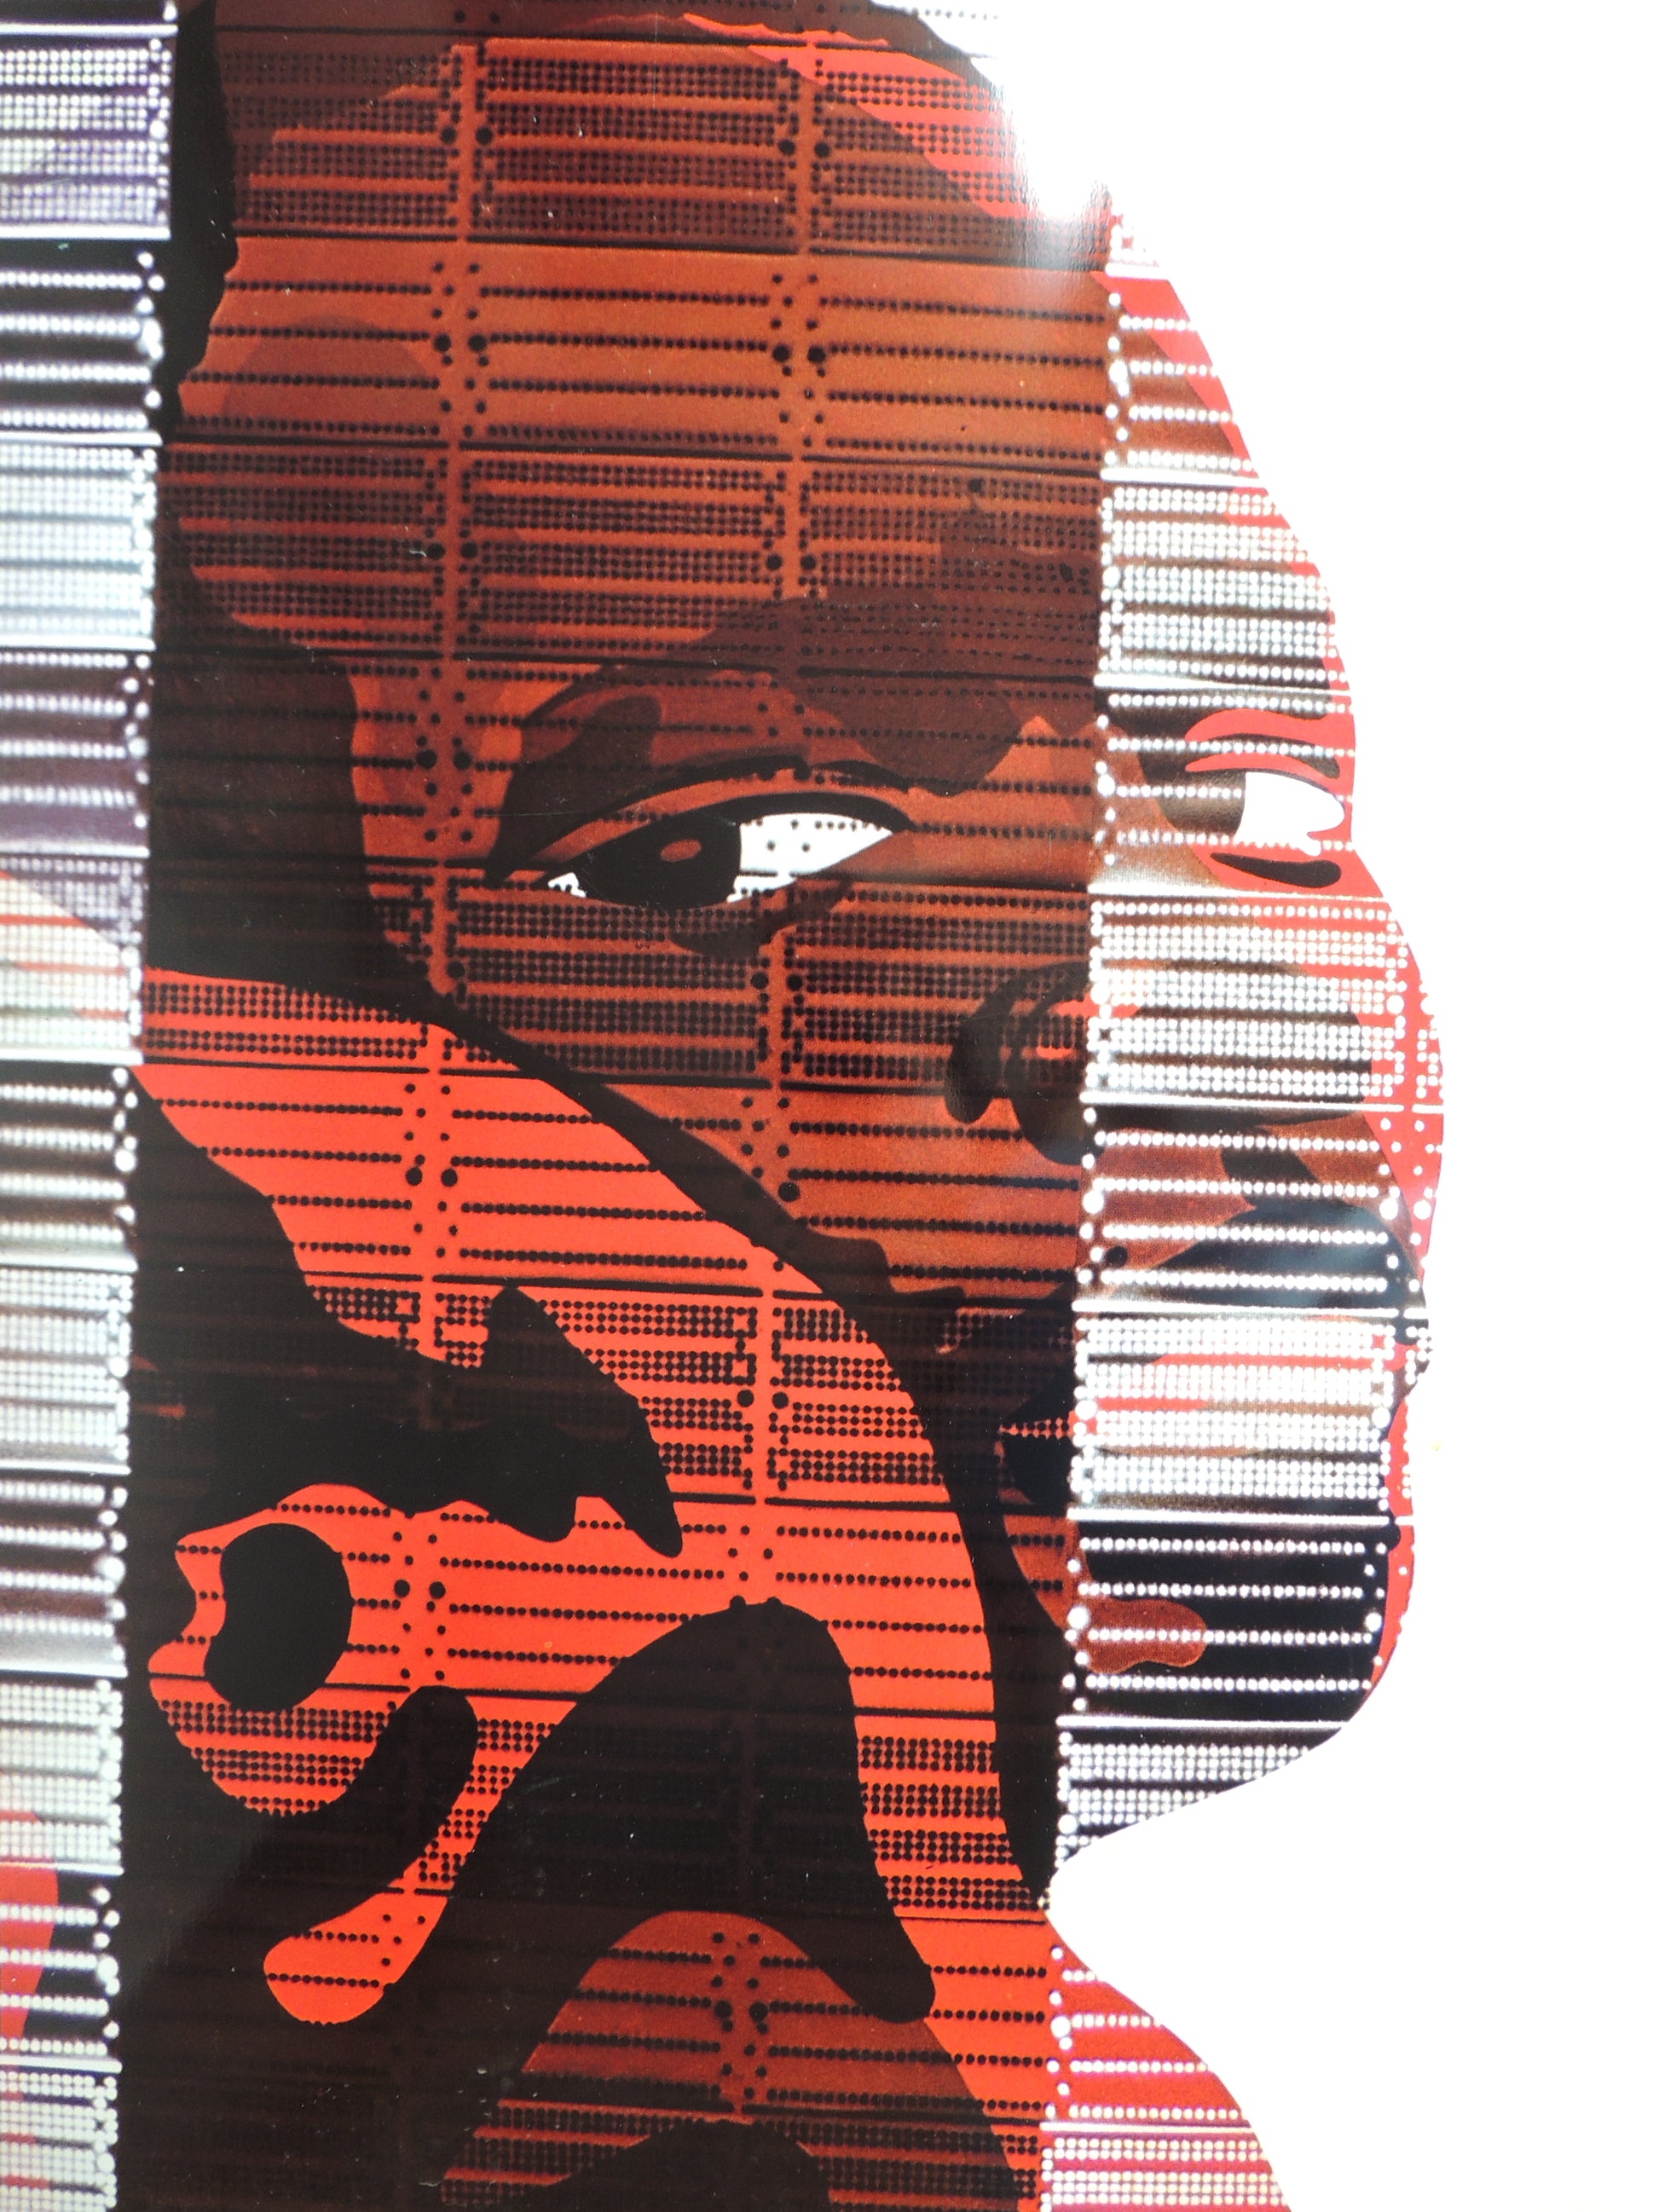 Impresión sobre plancha metálica edición limitada arte contemporáneo Antoni Miró Vencerem detalle cara Gaudifond